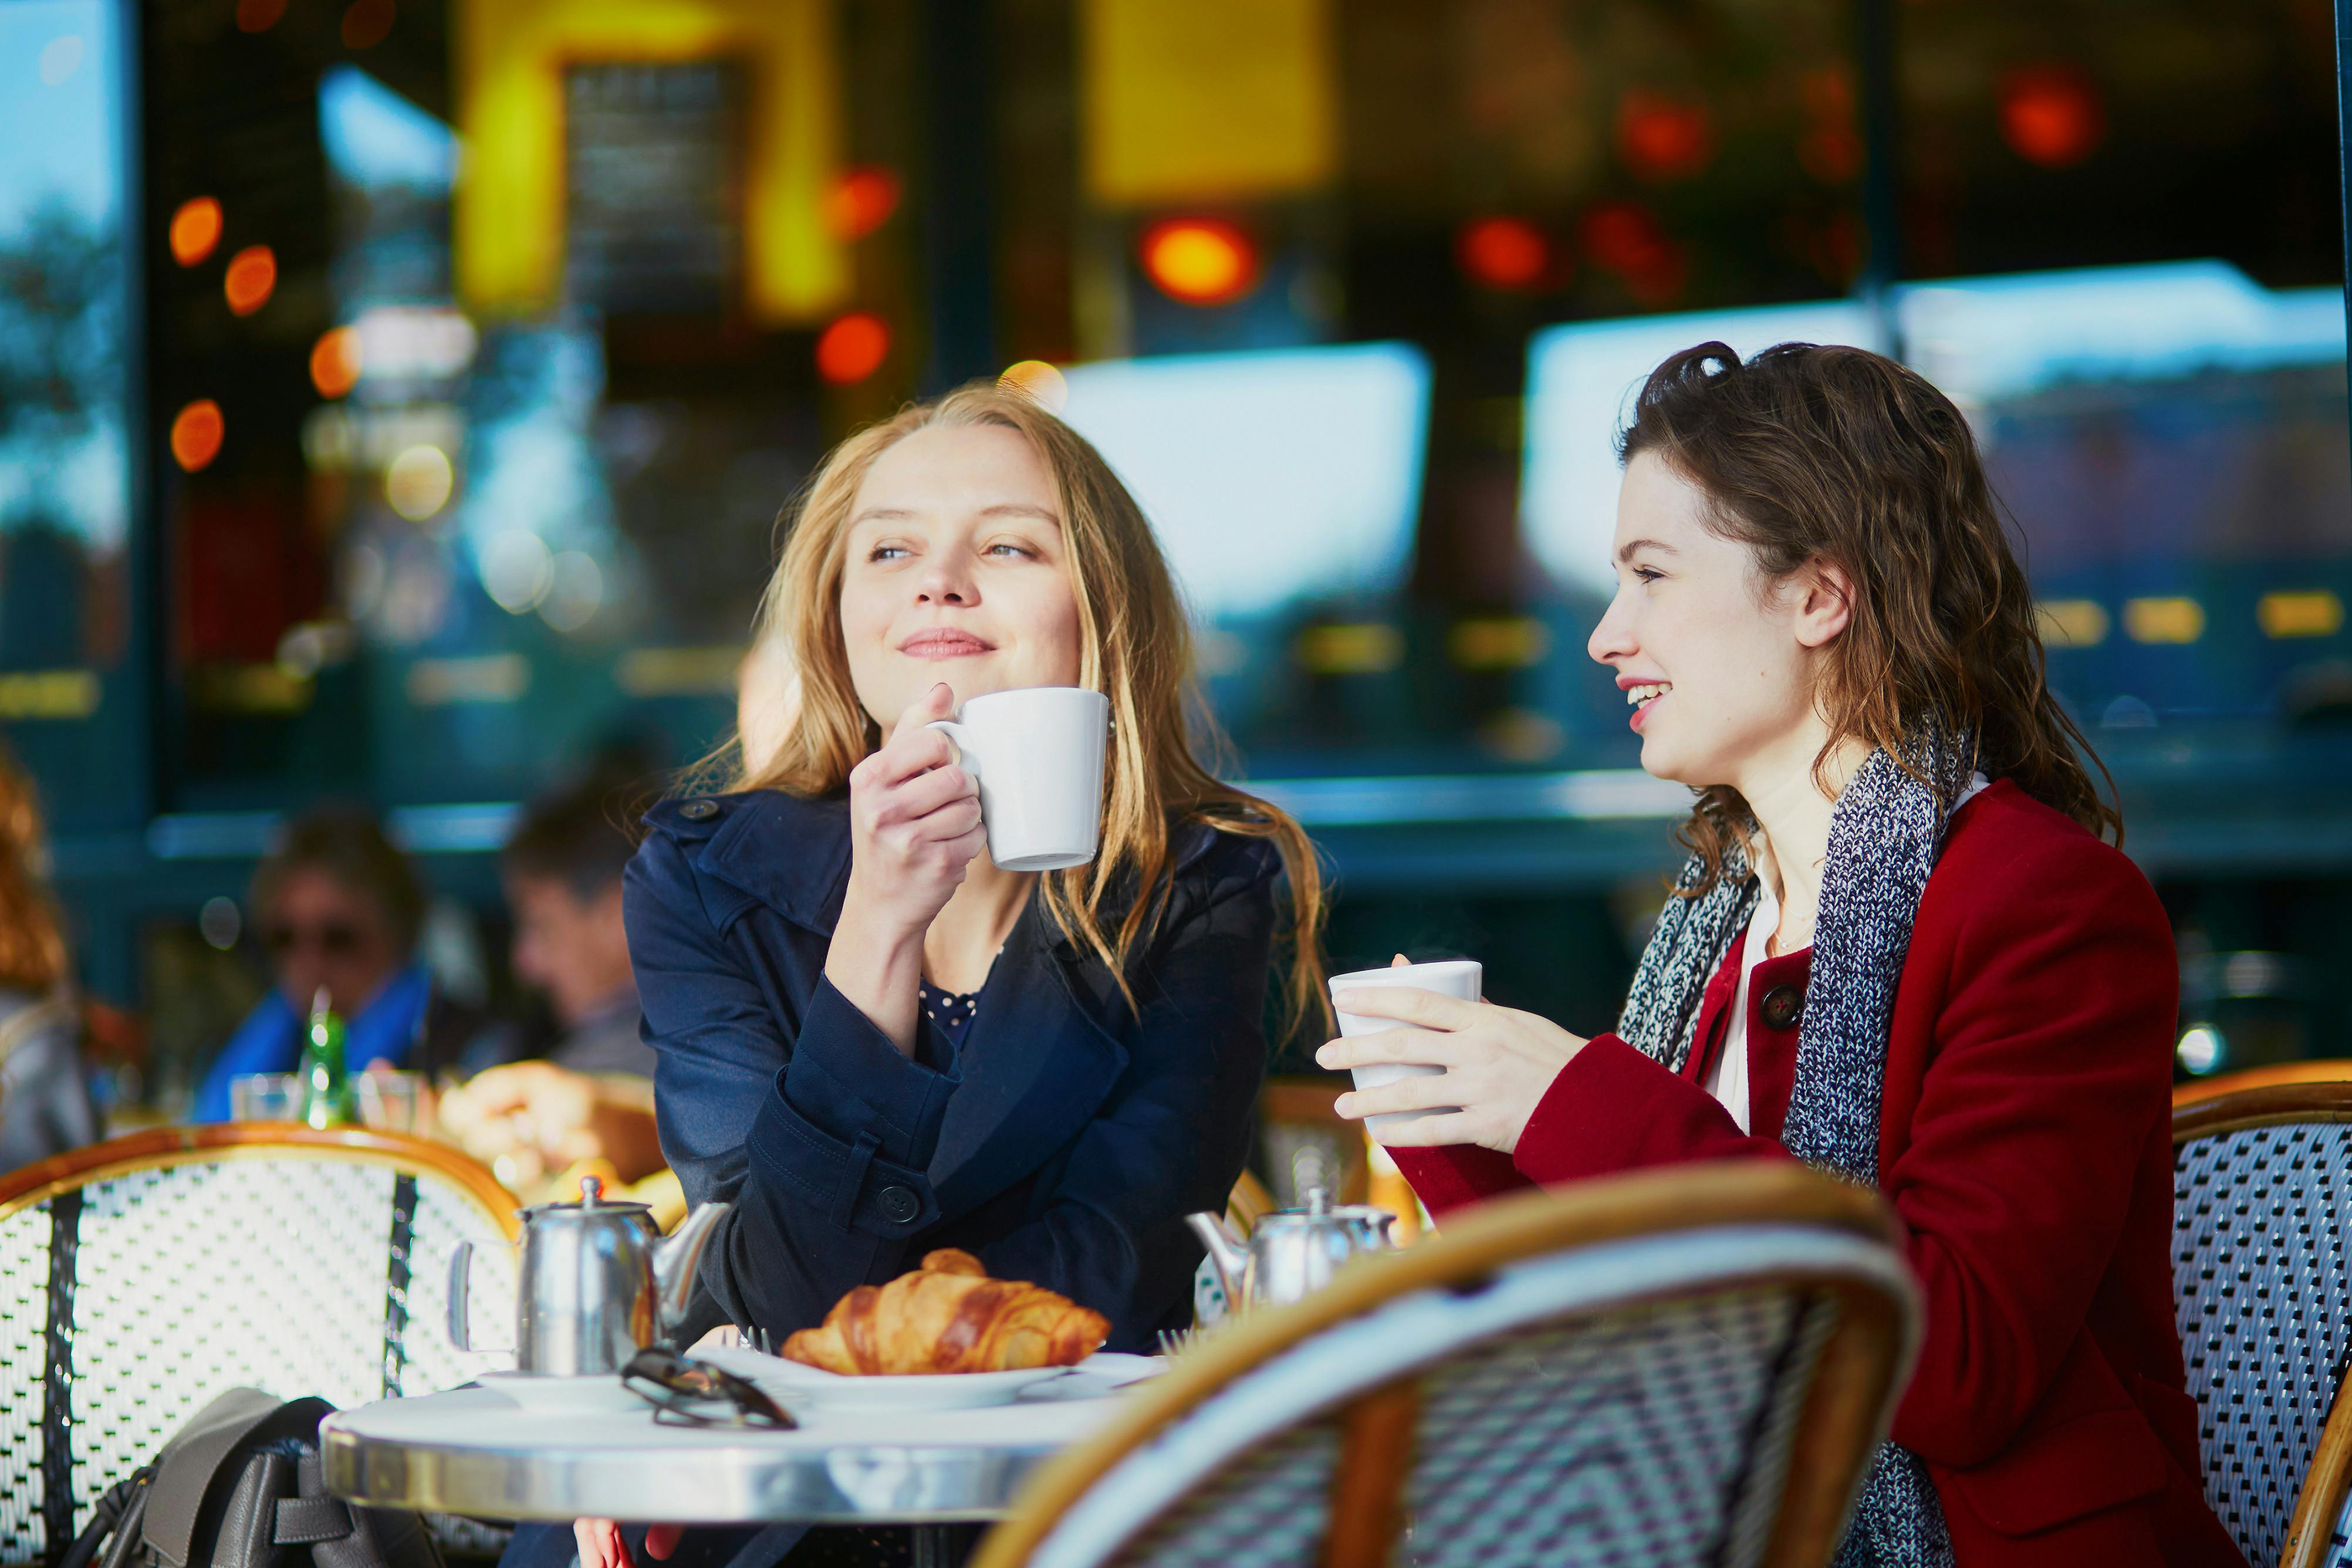 Rozmowa po francusku i kawa w Cafe de Flore